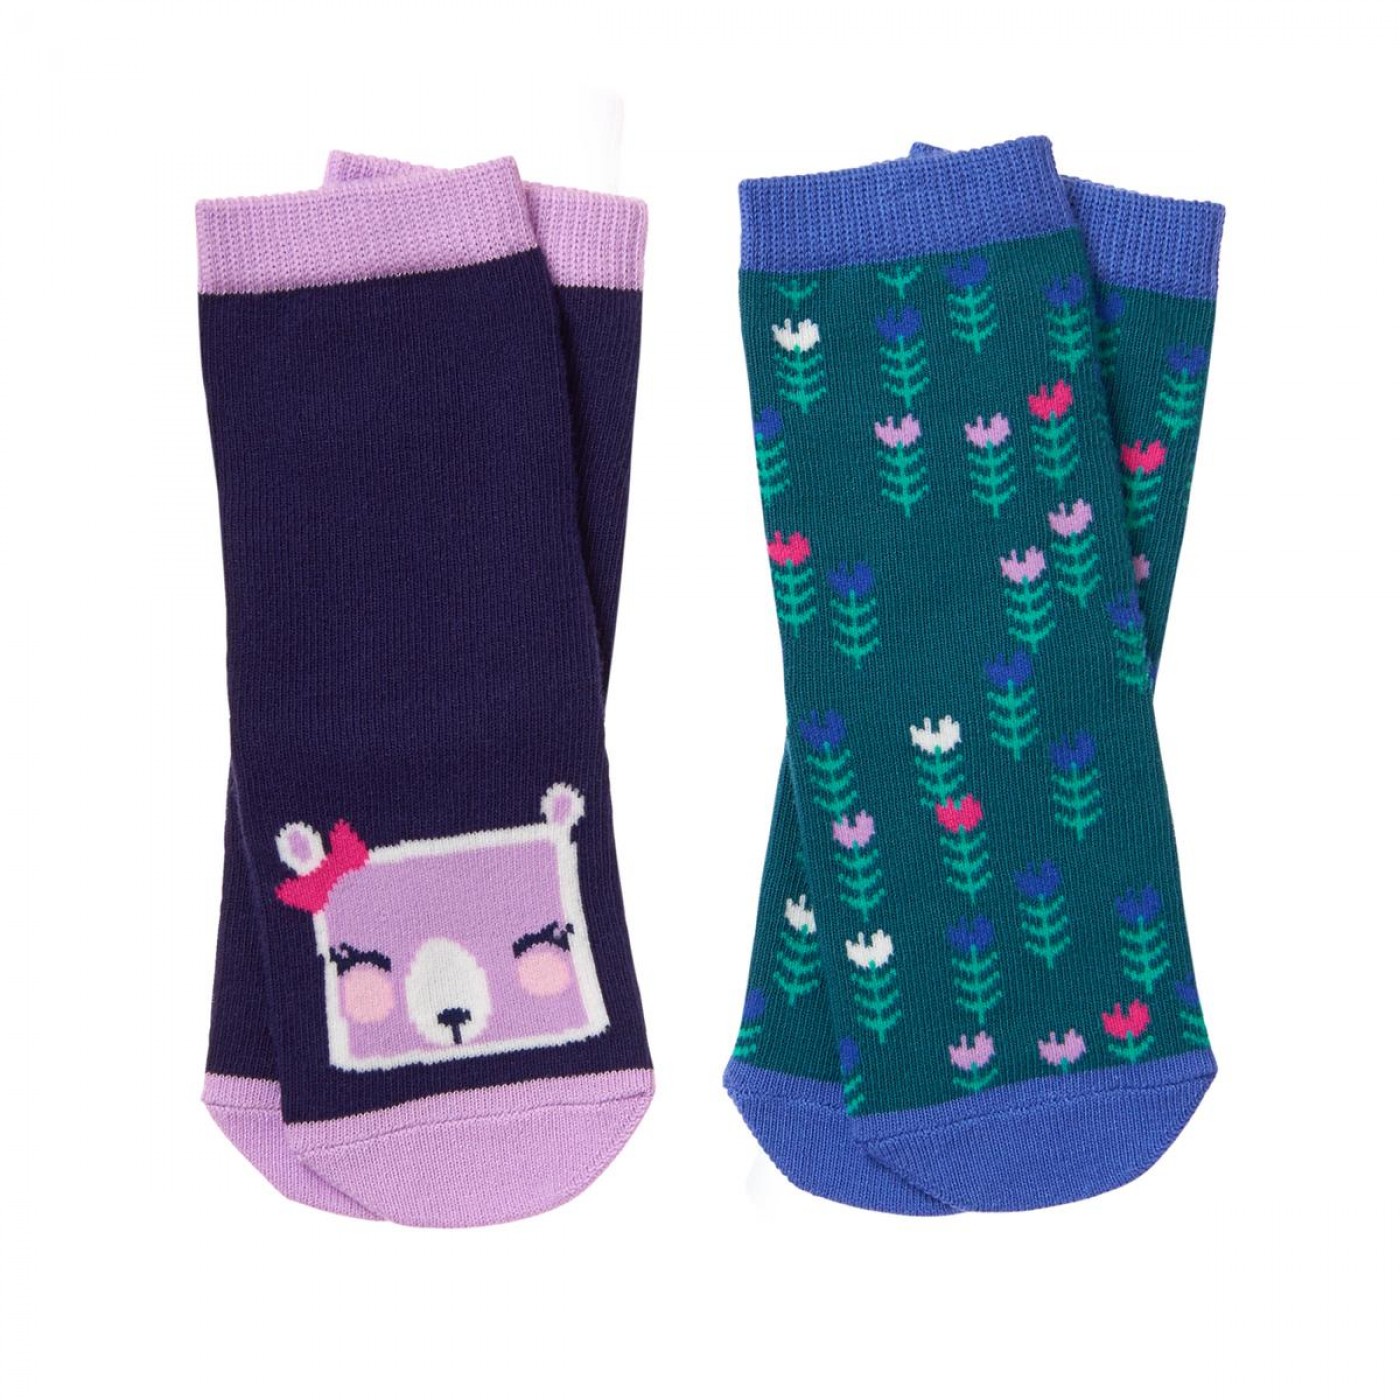 熊與森林襪子兩件組